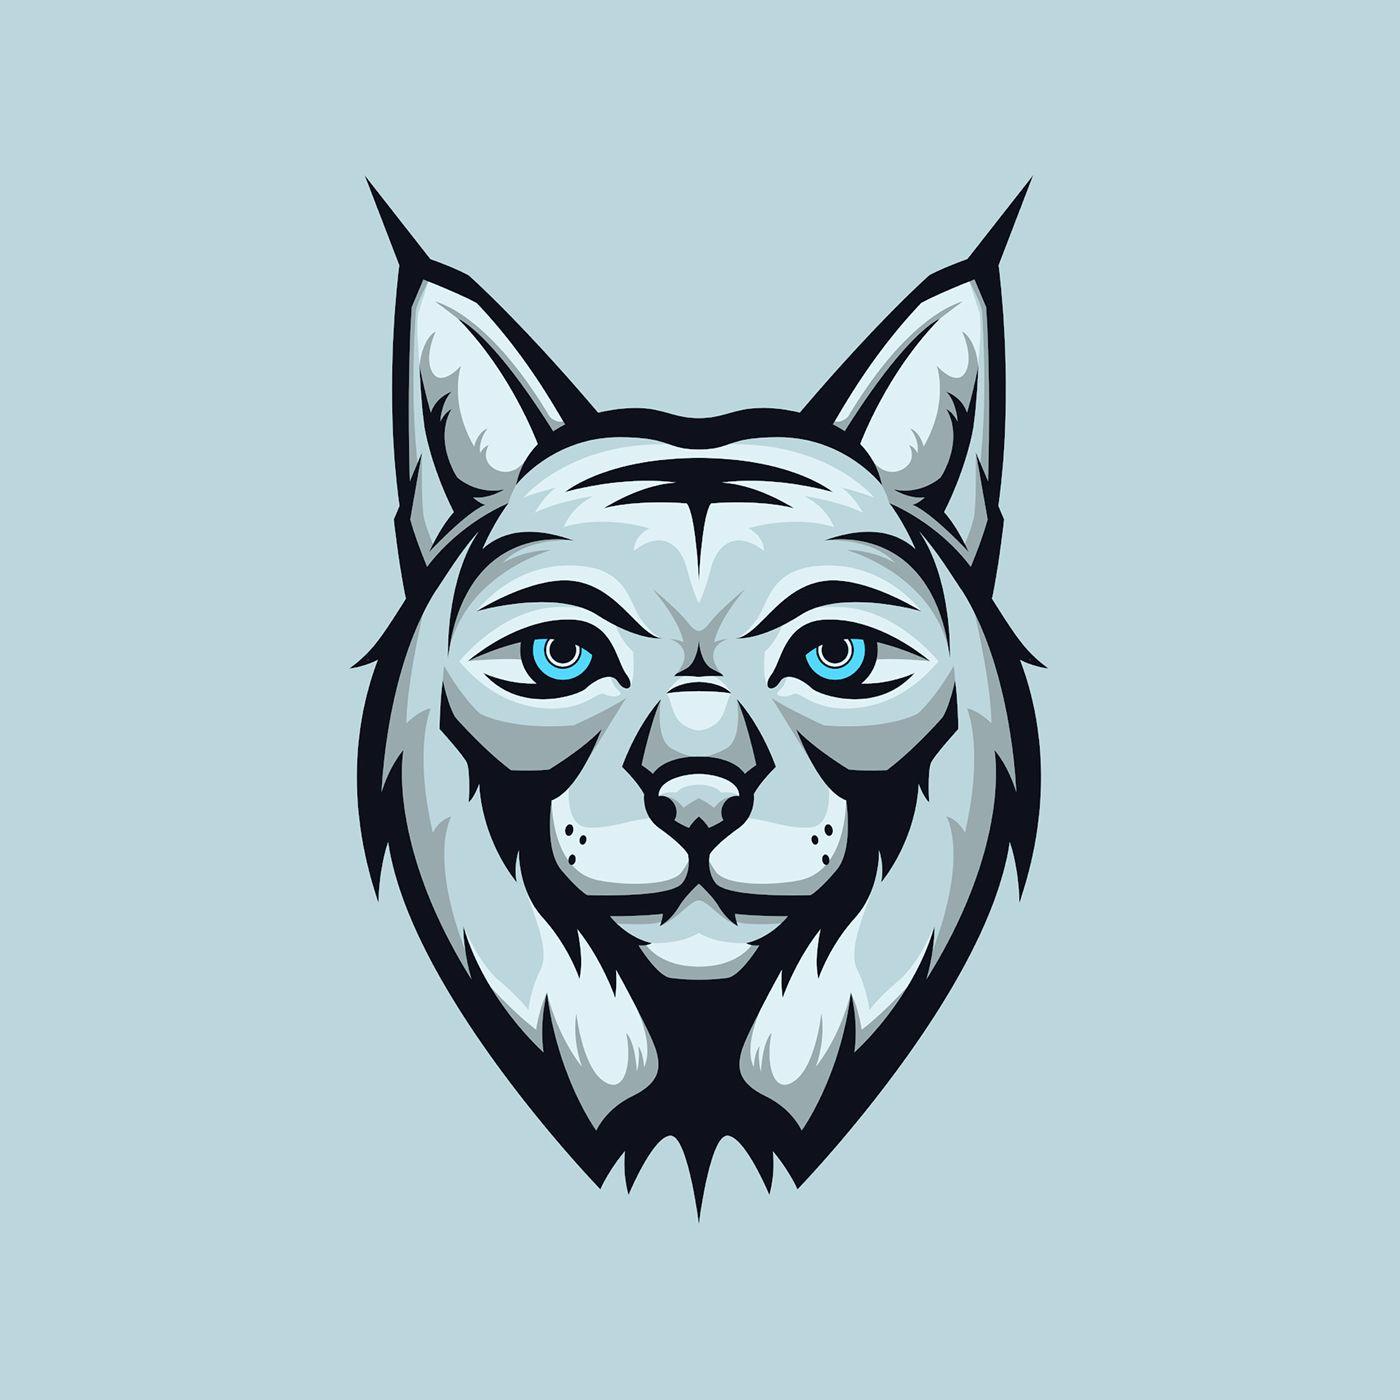 Lynx Logo - Lynx Logo / Mascot on Behance